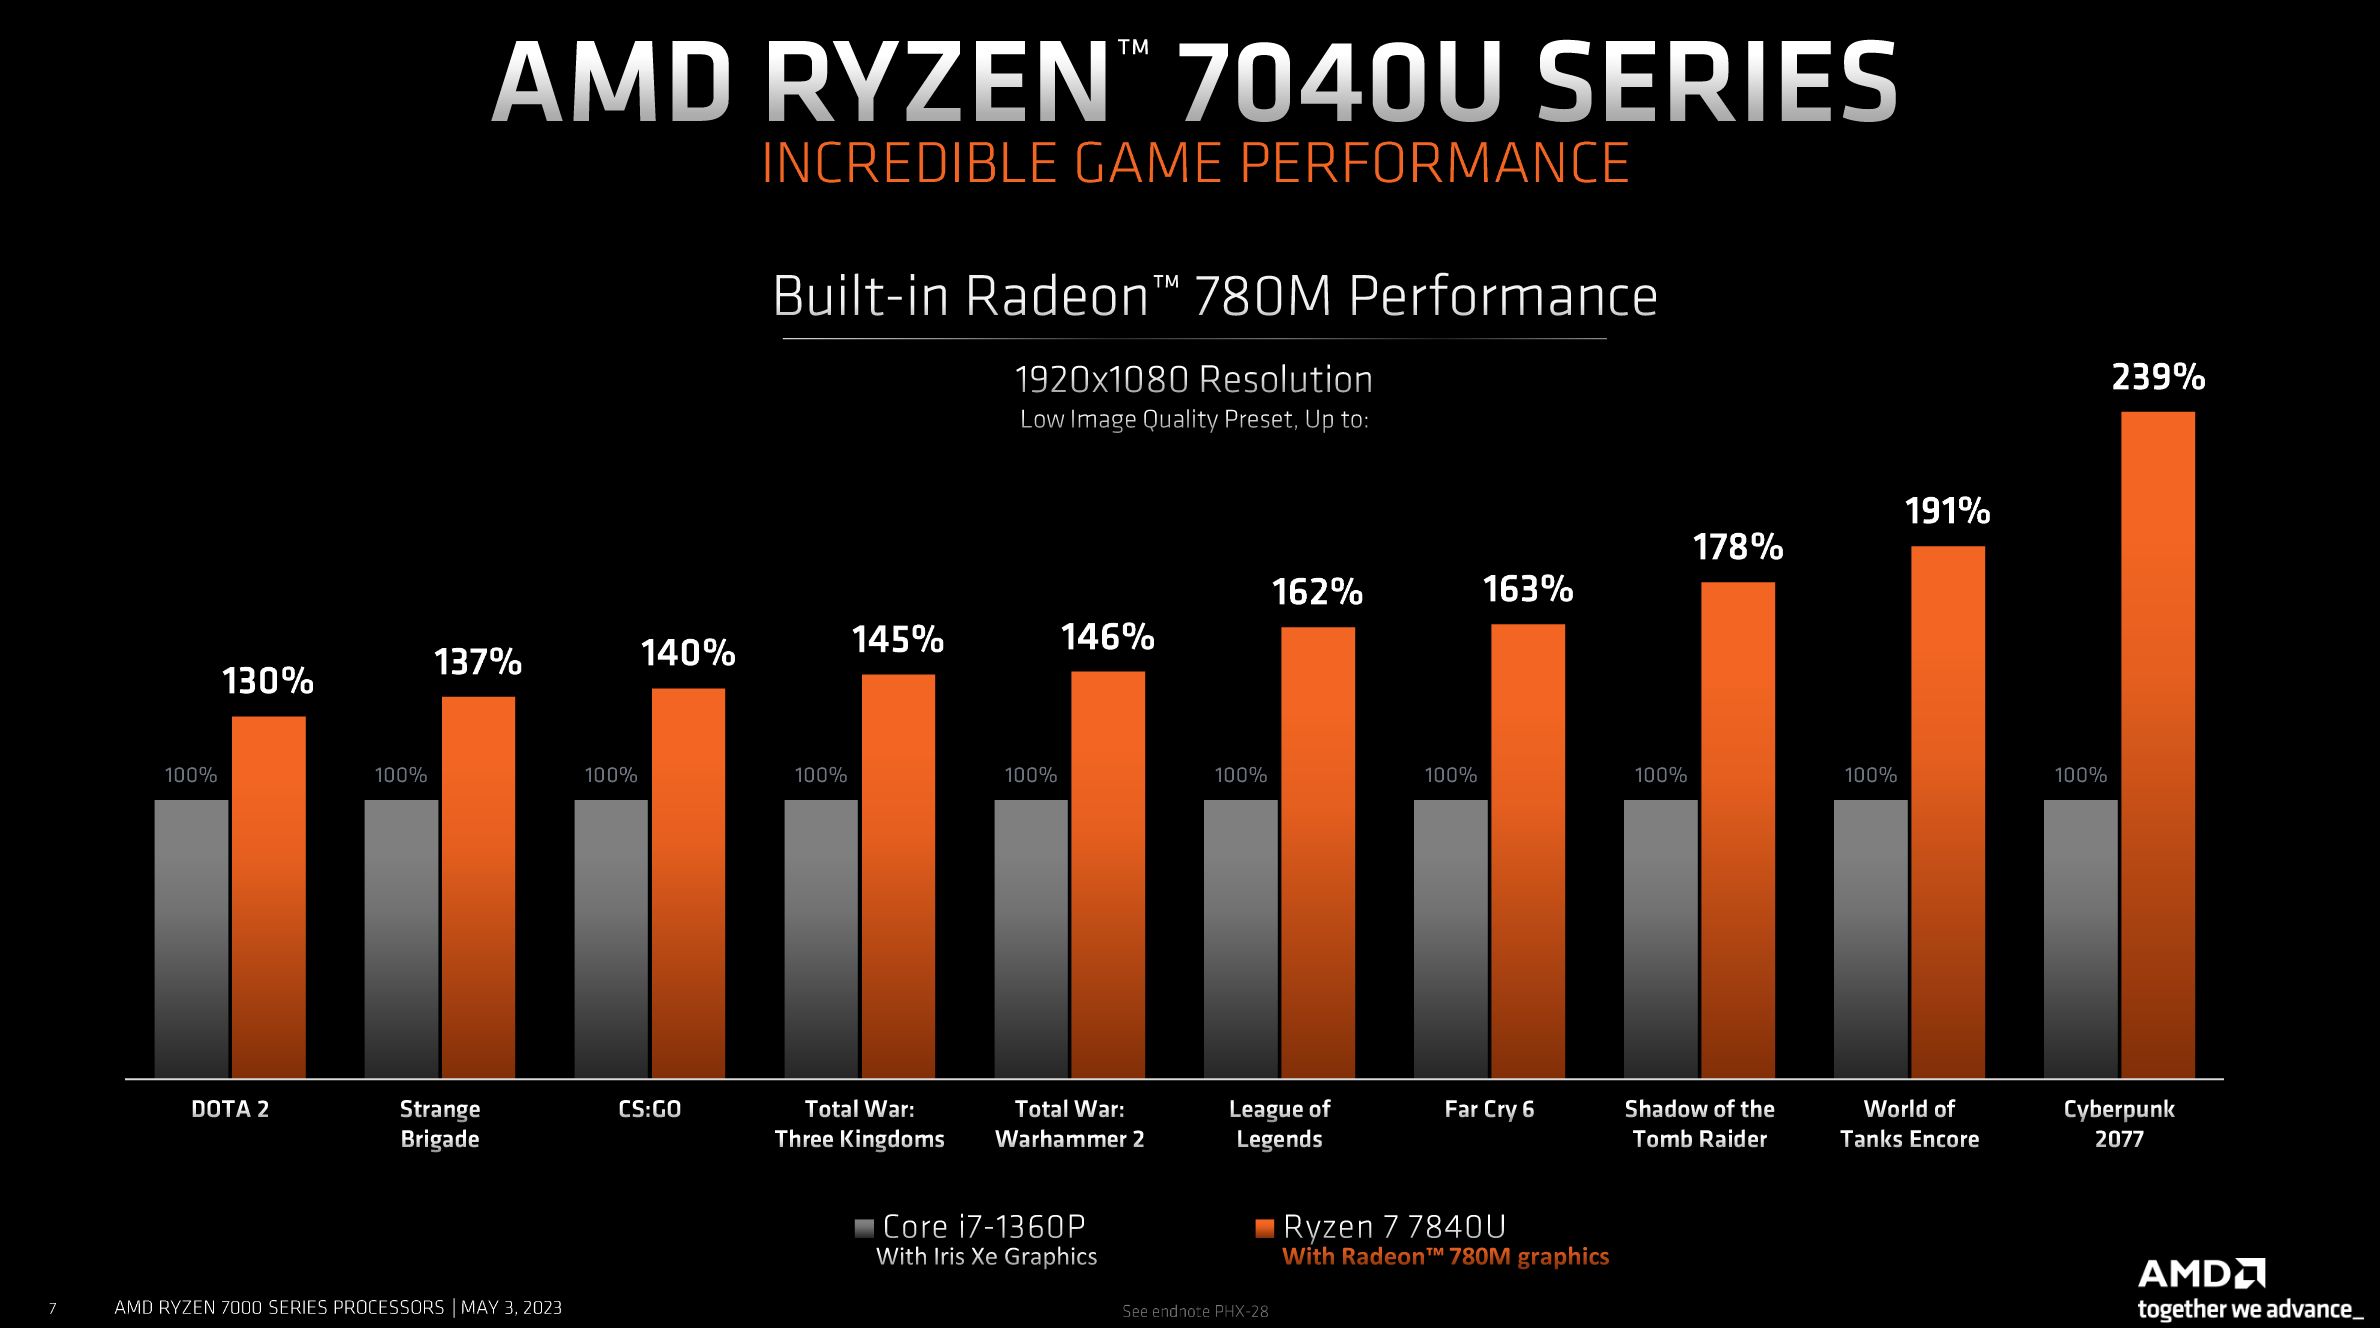 Radeon 780M